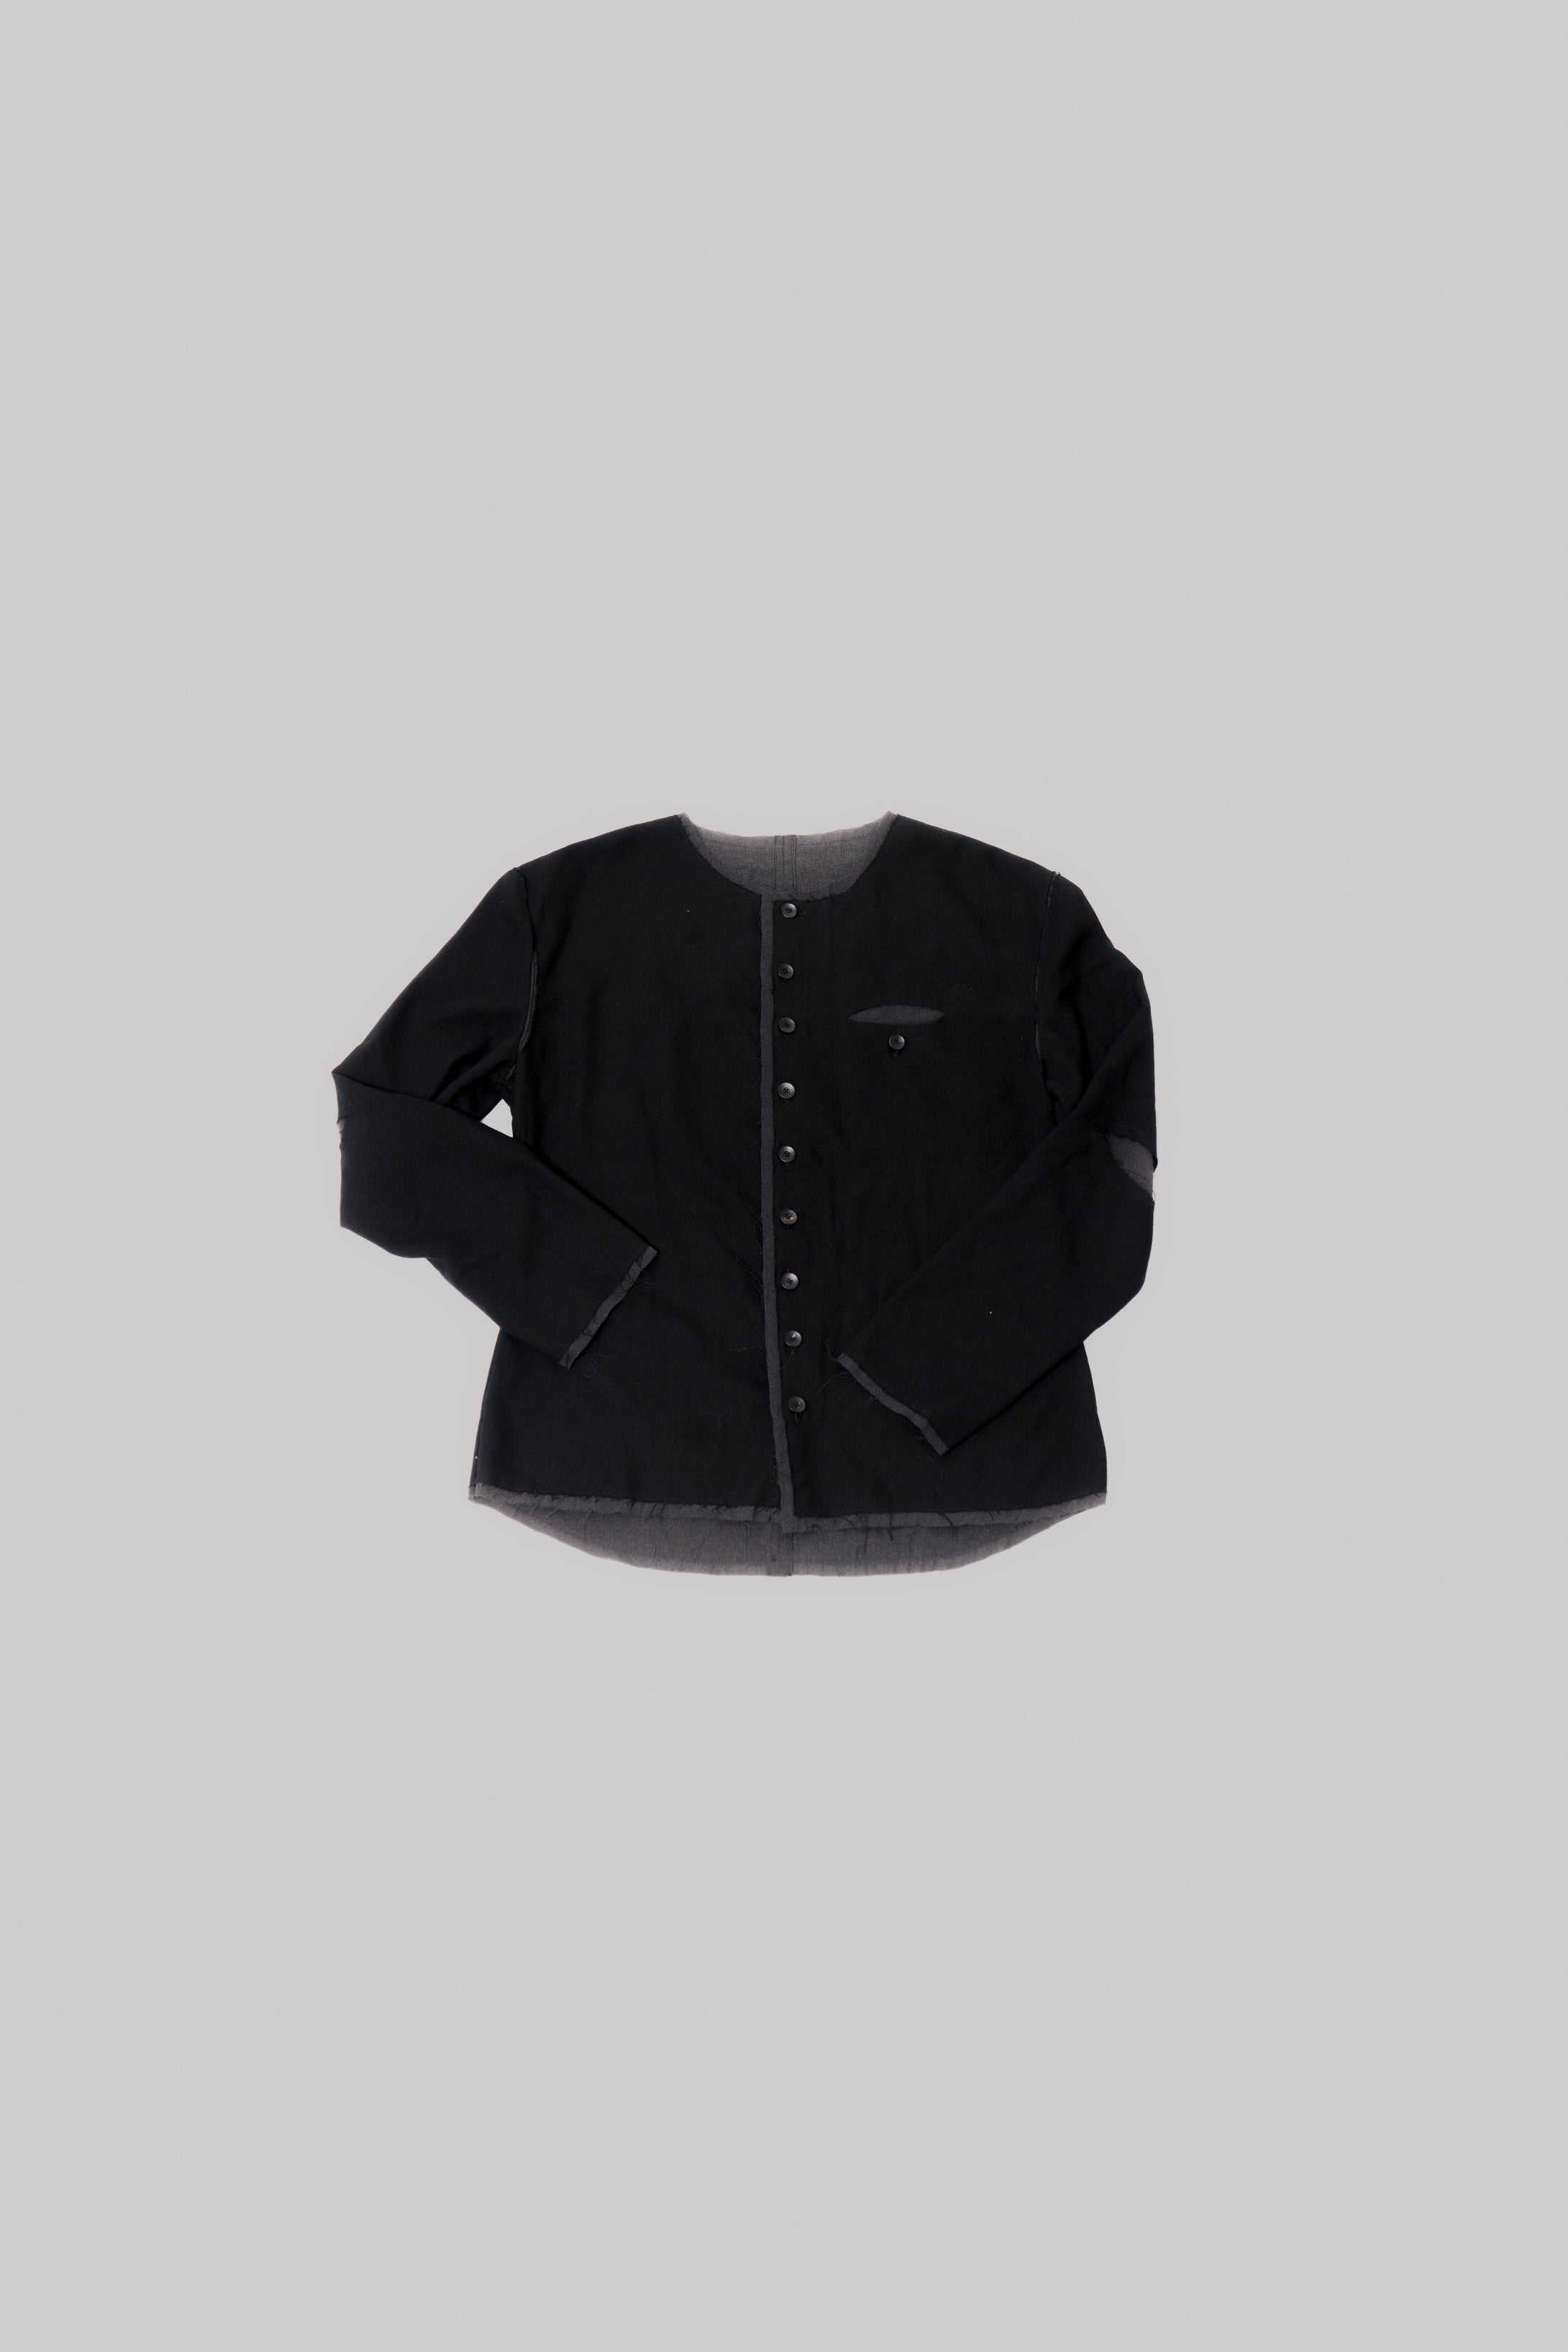 019 - Crevice Vest Jacket